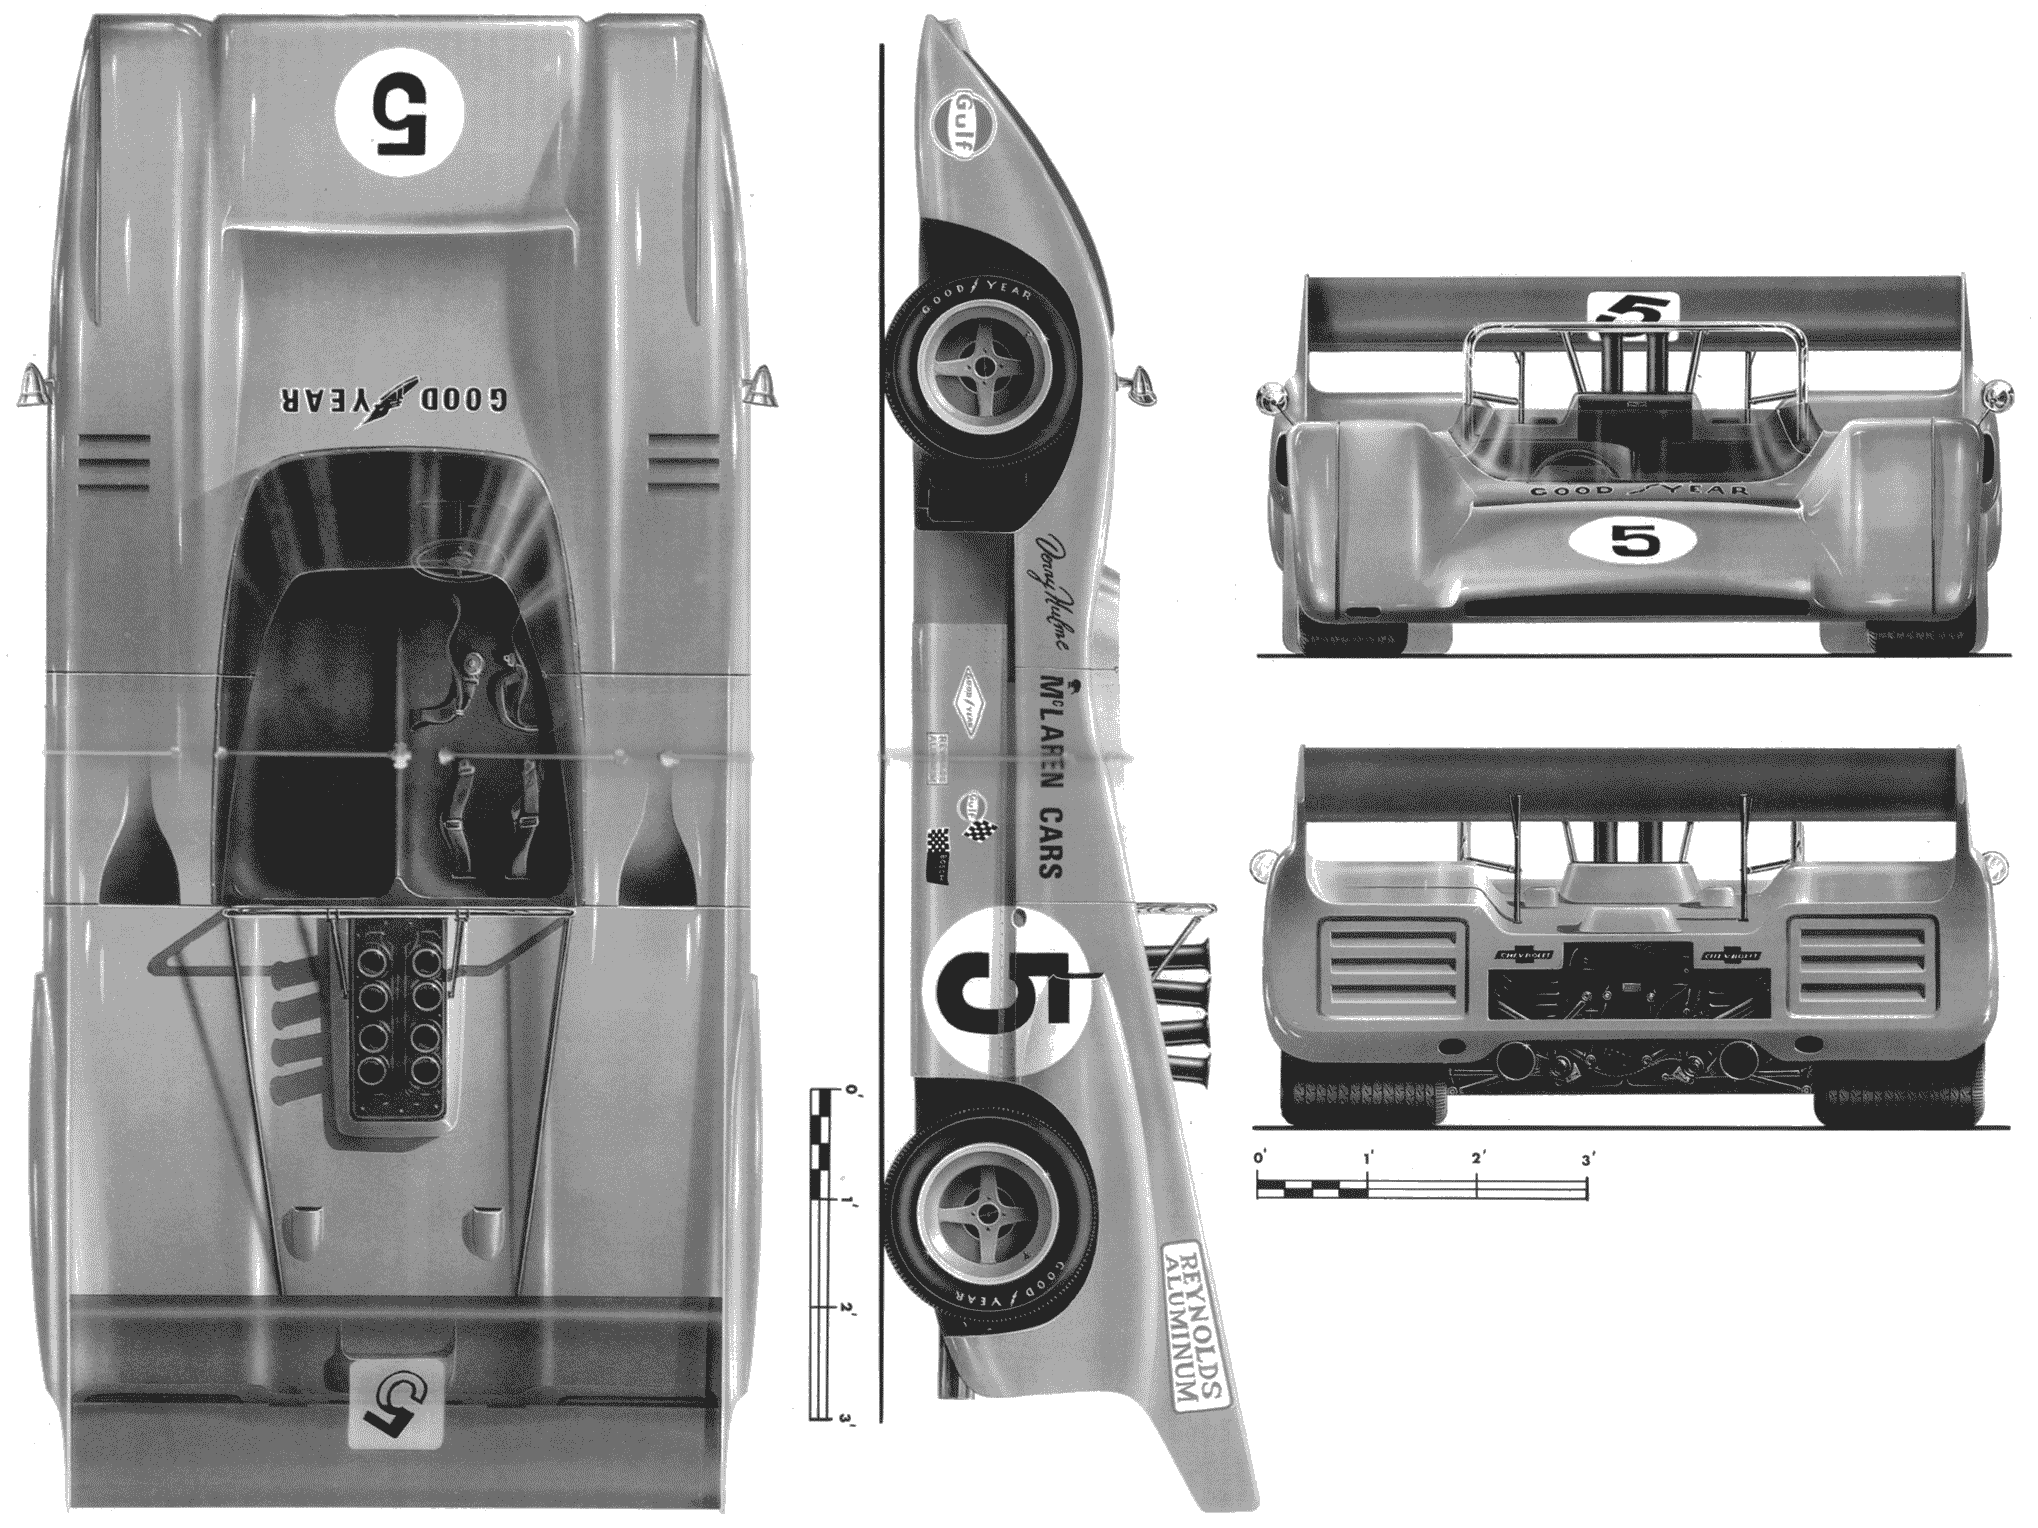 McLaren M8D blueprint